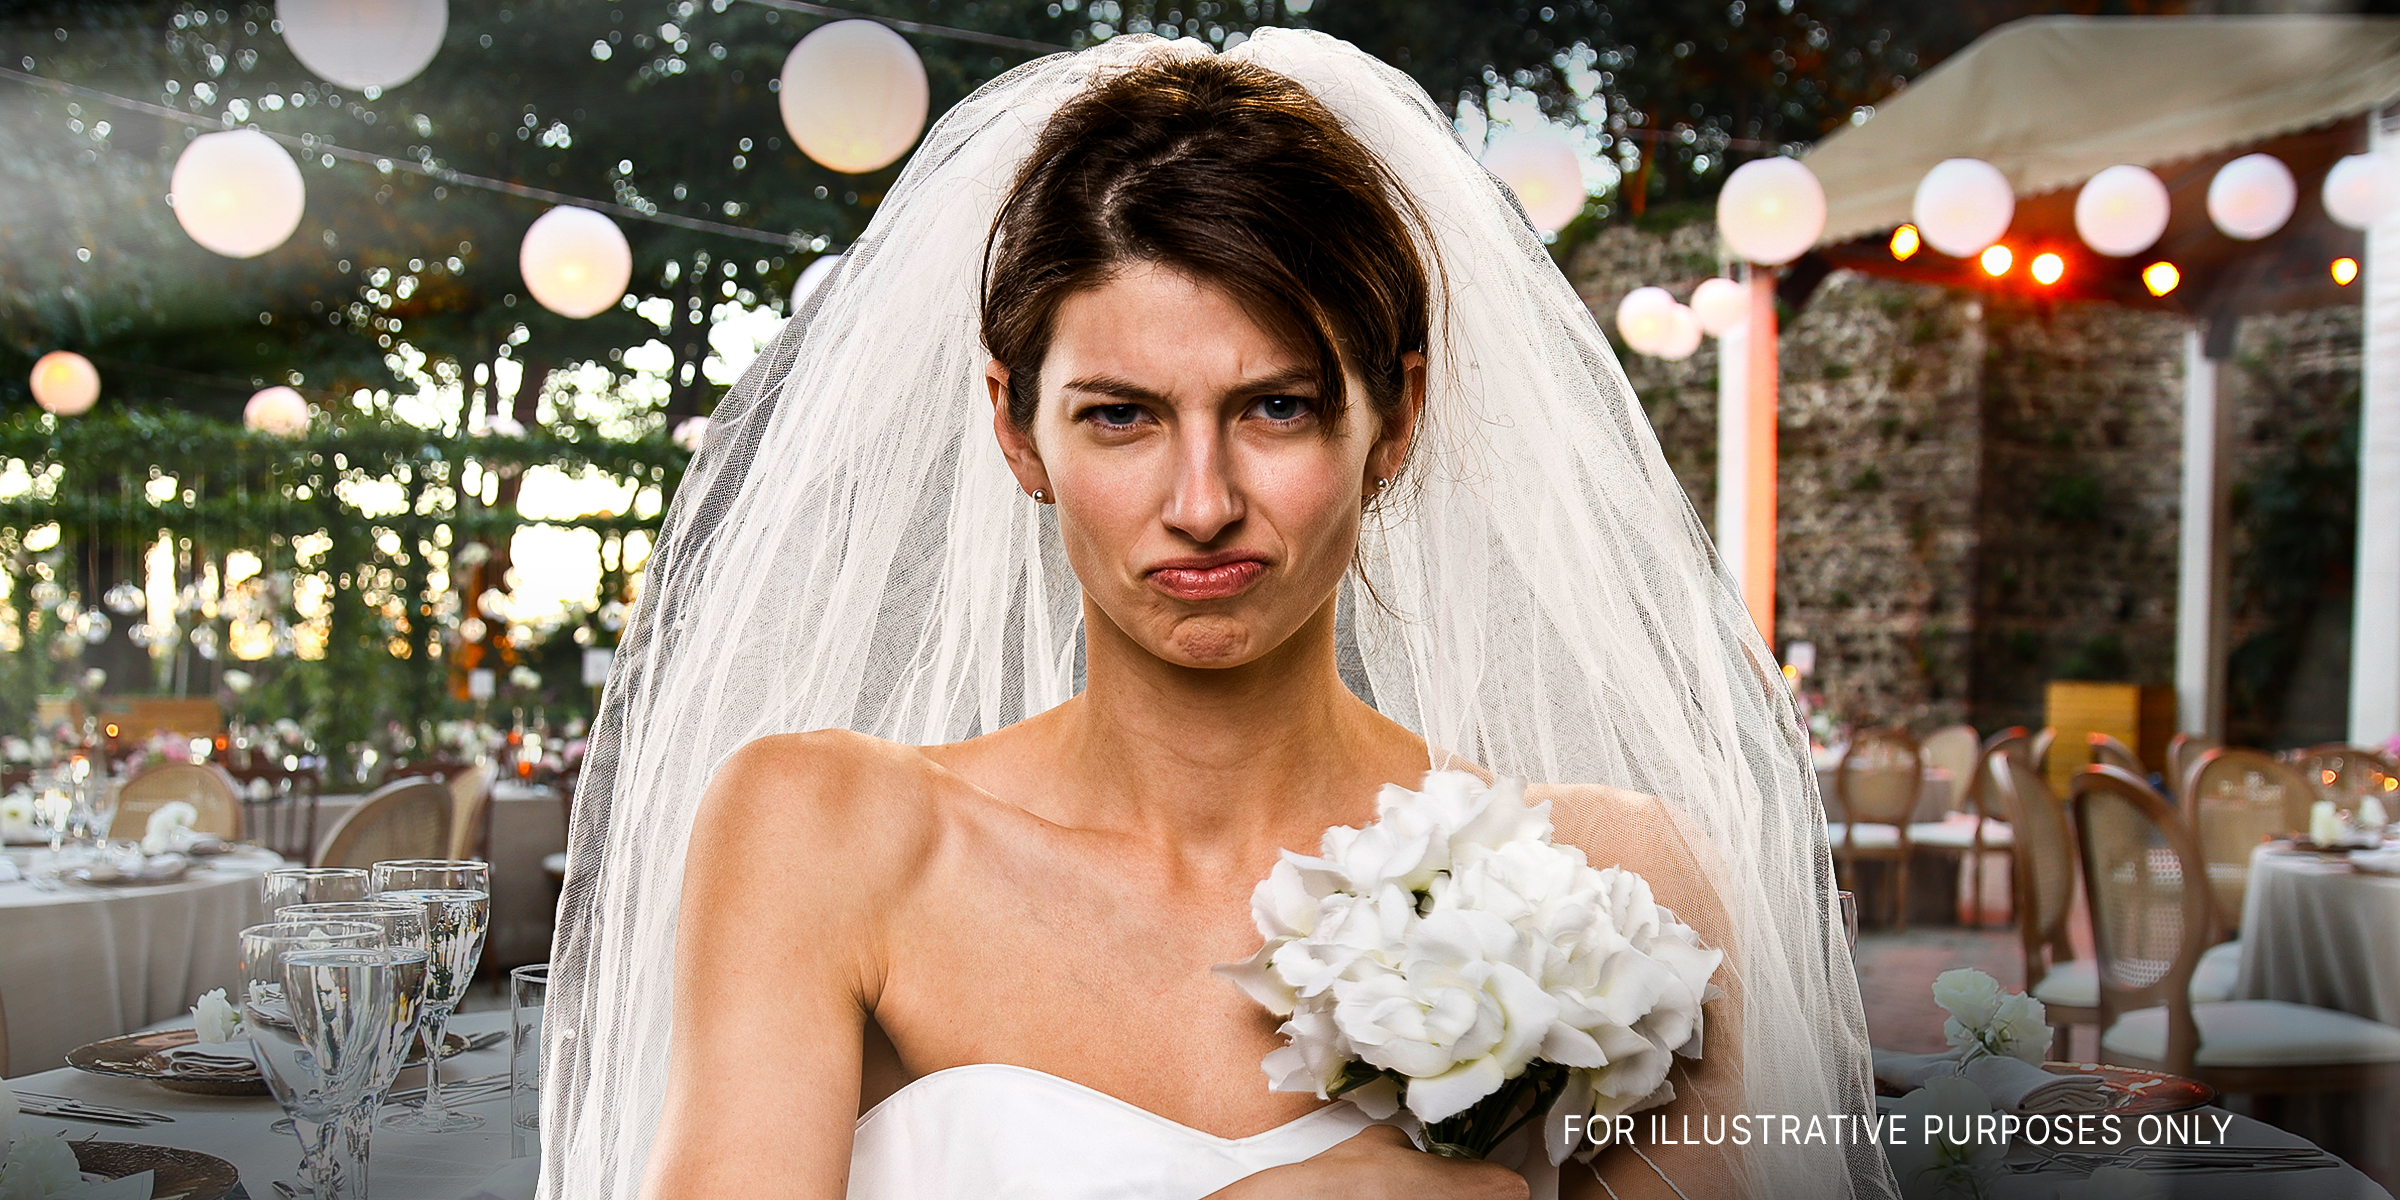 An upset bride | Source: Shutterstock